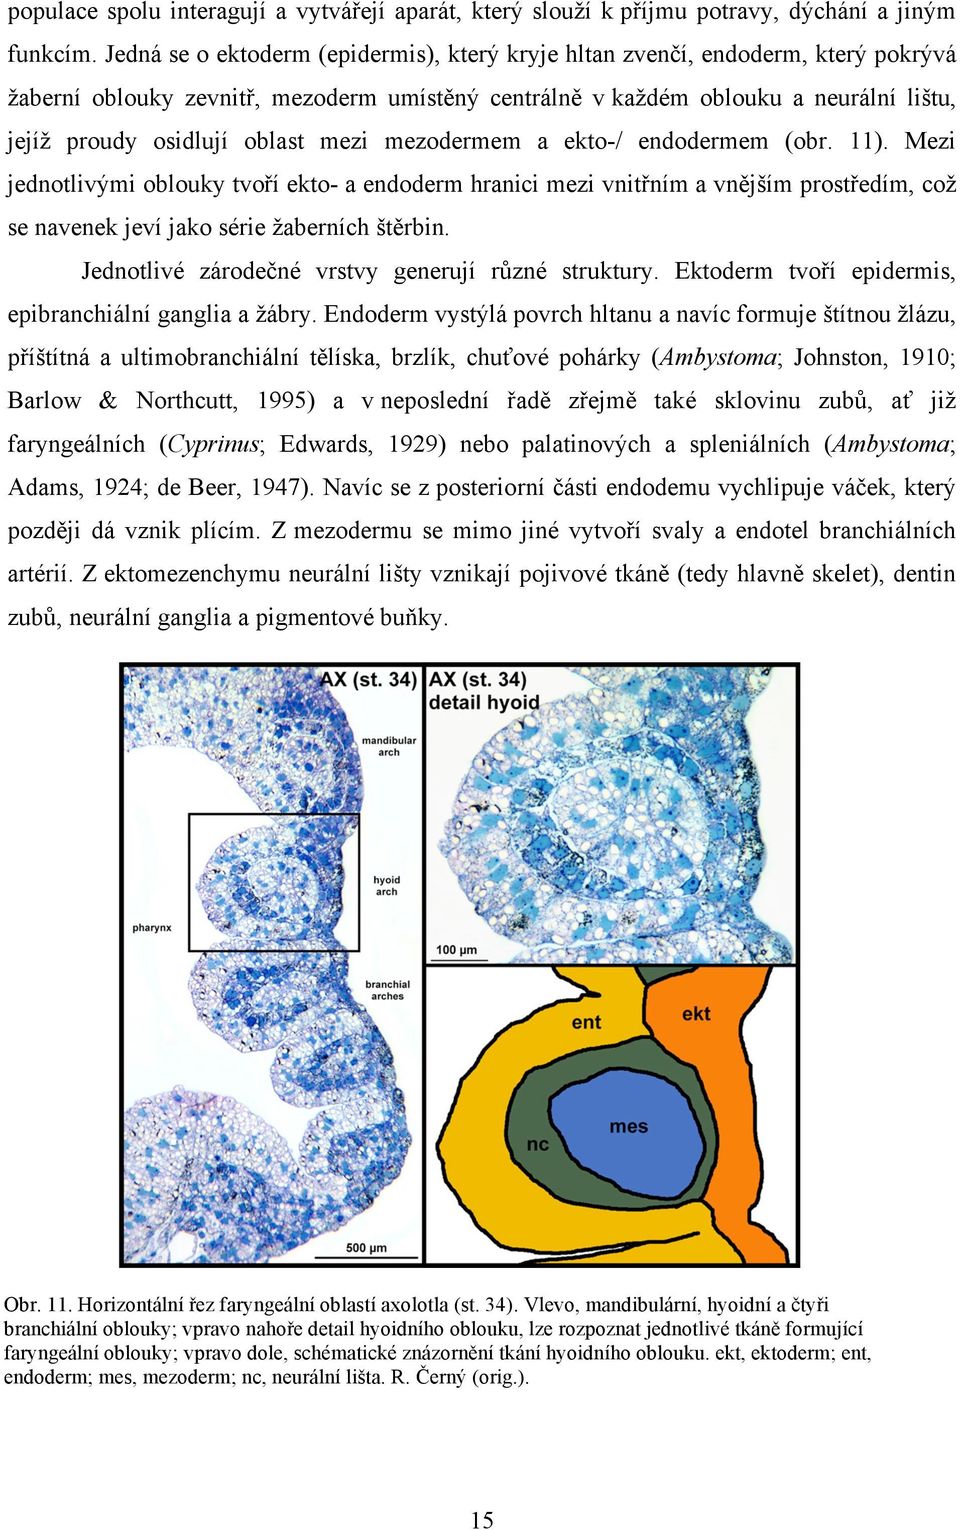 mezi mezodermem a ekto-/ endodermem (obr. 11). Mezi jednotlivými oblouky tvoří ekto- a endoderm hranici mezi vnitřním a vnějším prostředím, což se navenek jeví jako série žaberních štěrbin.